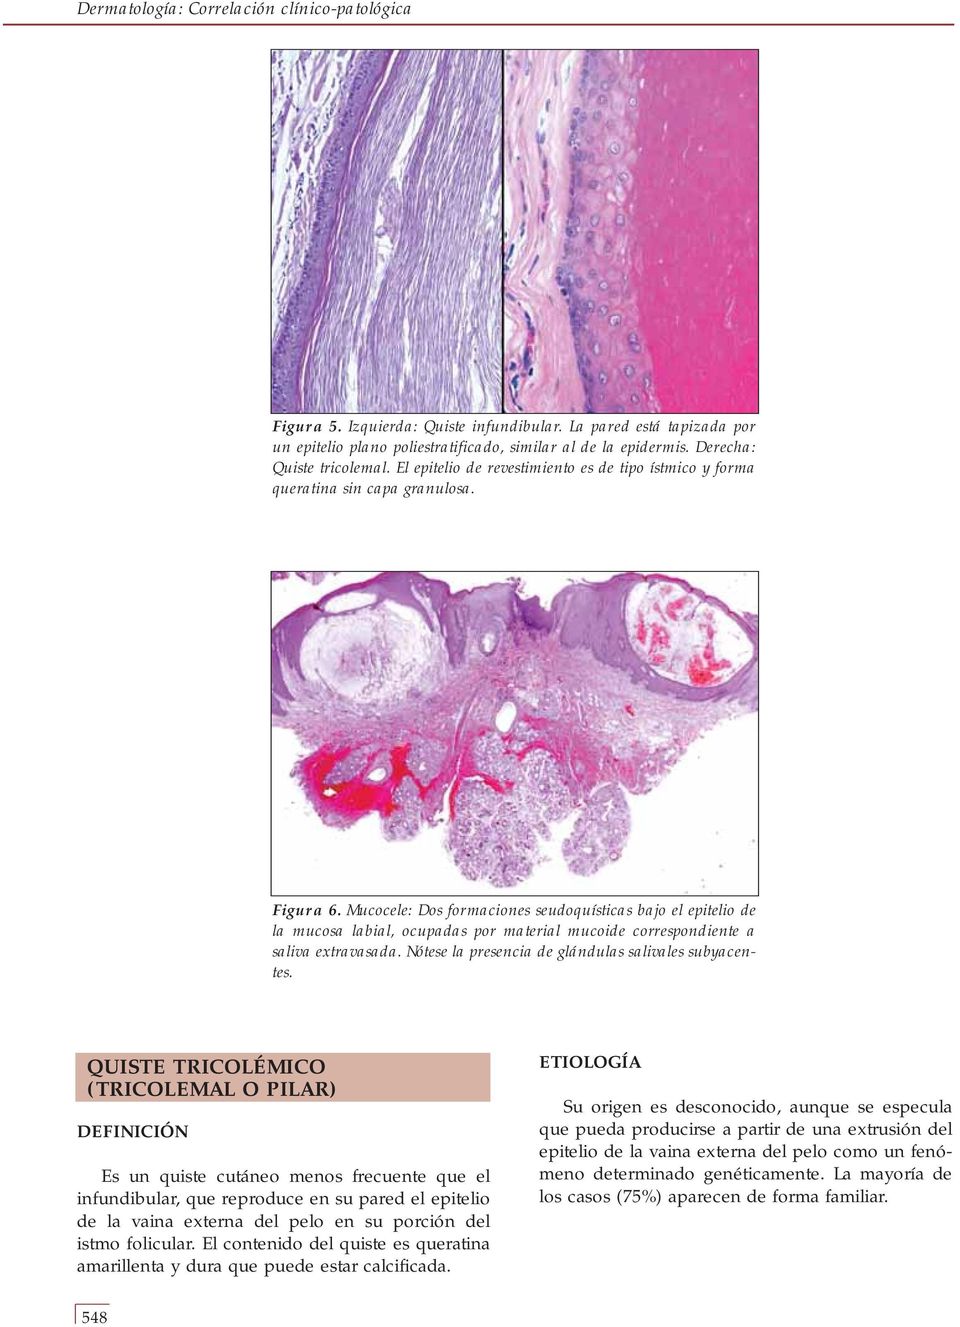 Mucocele: Dos formaciones seudoquísticas bajo el epitelio de la mucosa labial, ocupadas por material mucoide correspondiente a saliva extravasada.